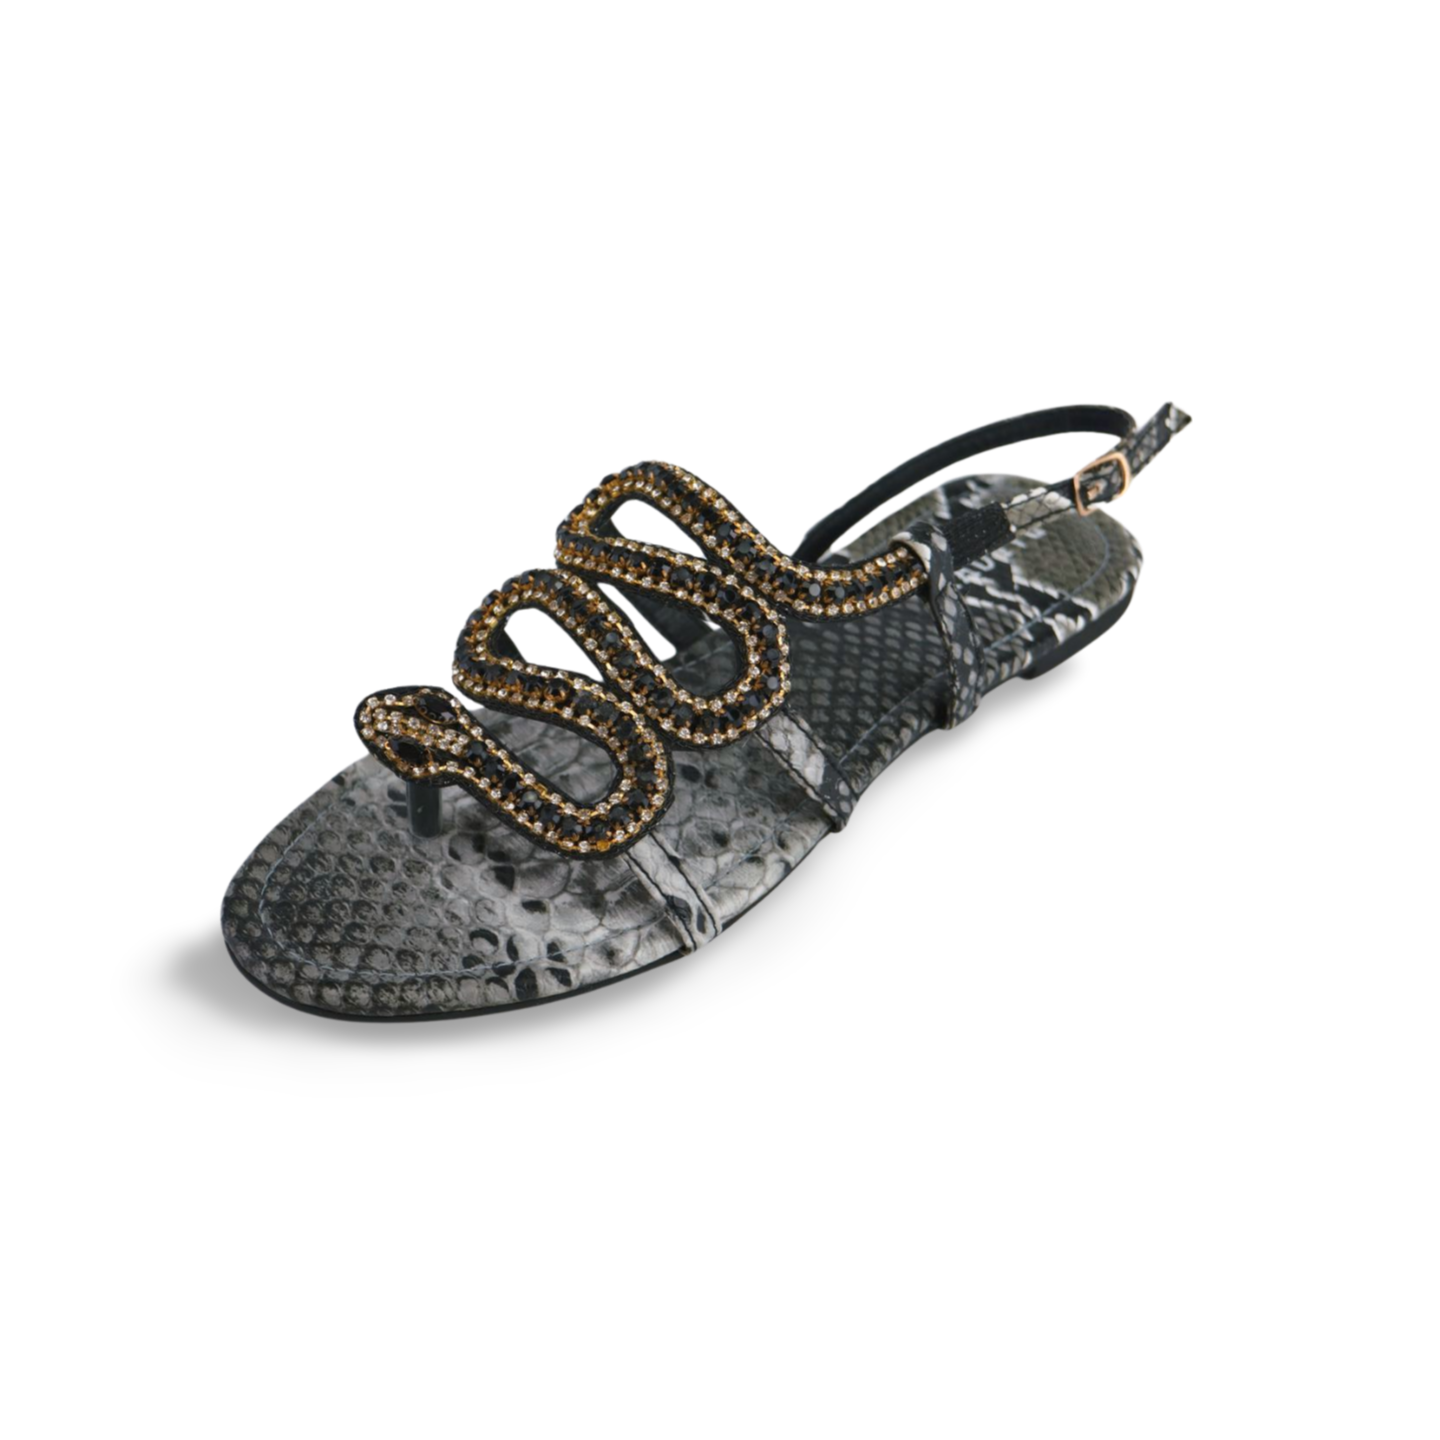 Beautiful Rhinestones Embellished Snake Sandals